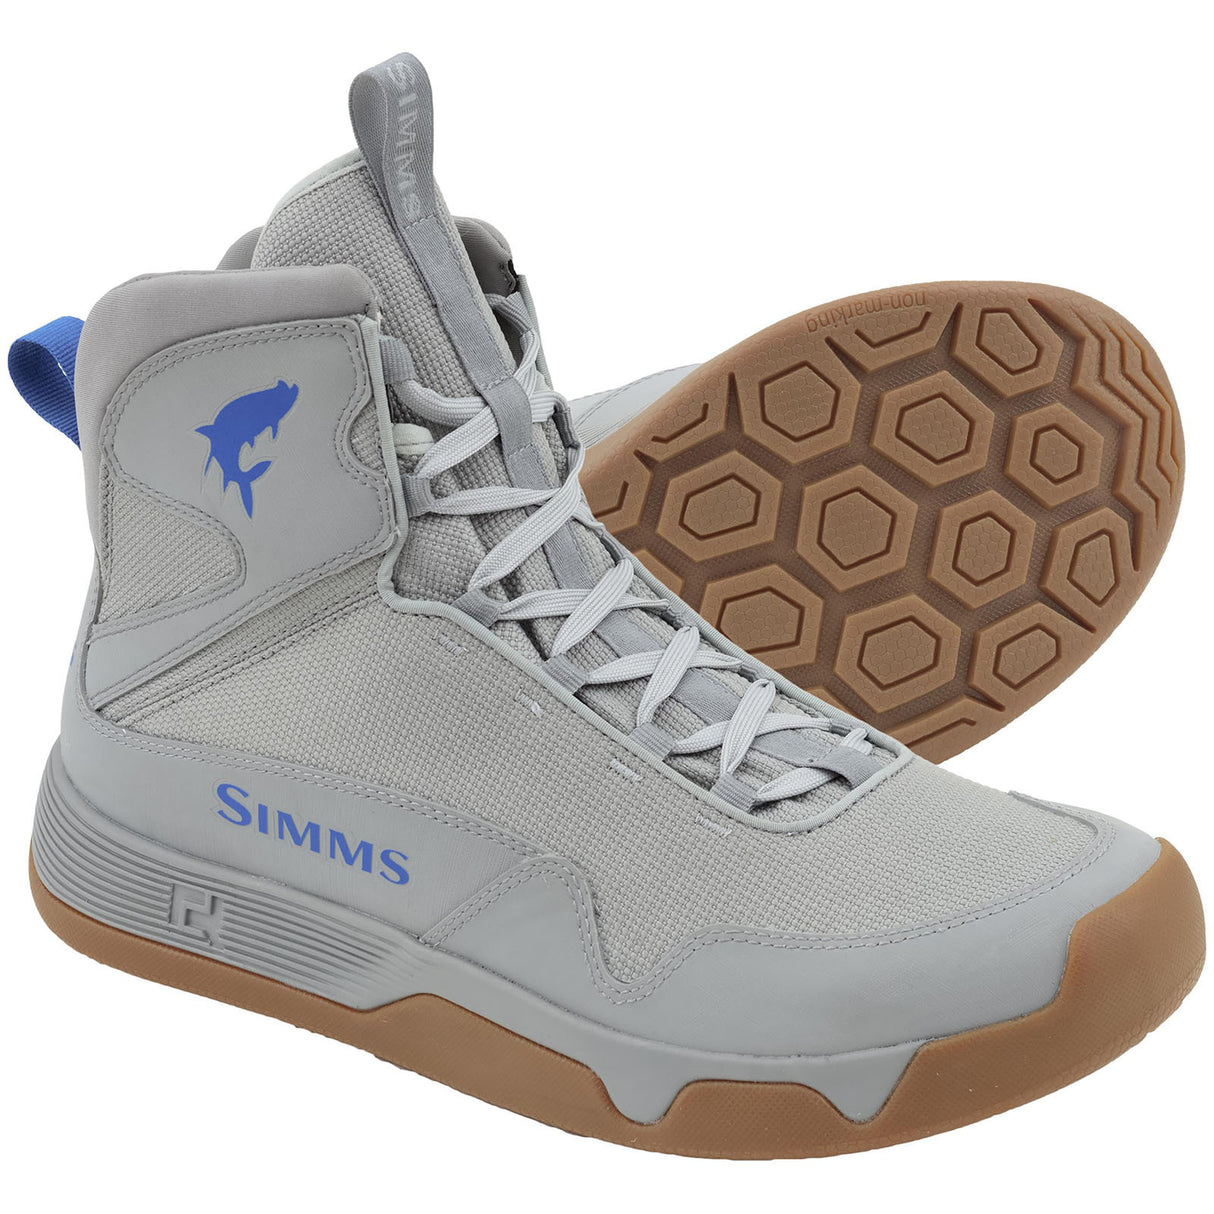 SIMMS Men's Flats Sneaker